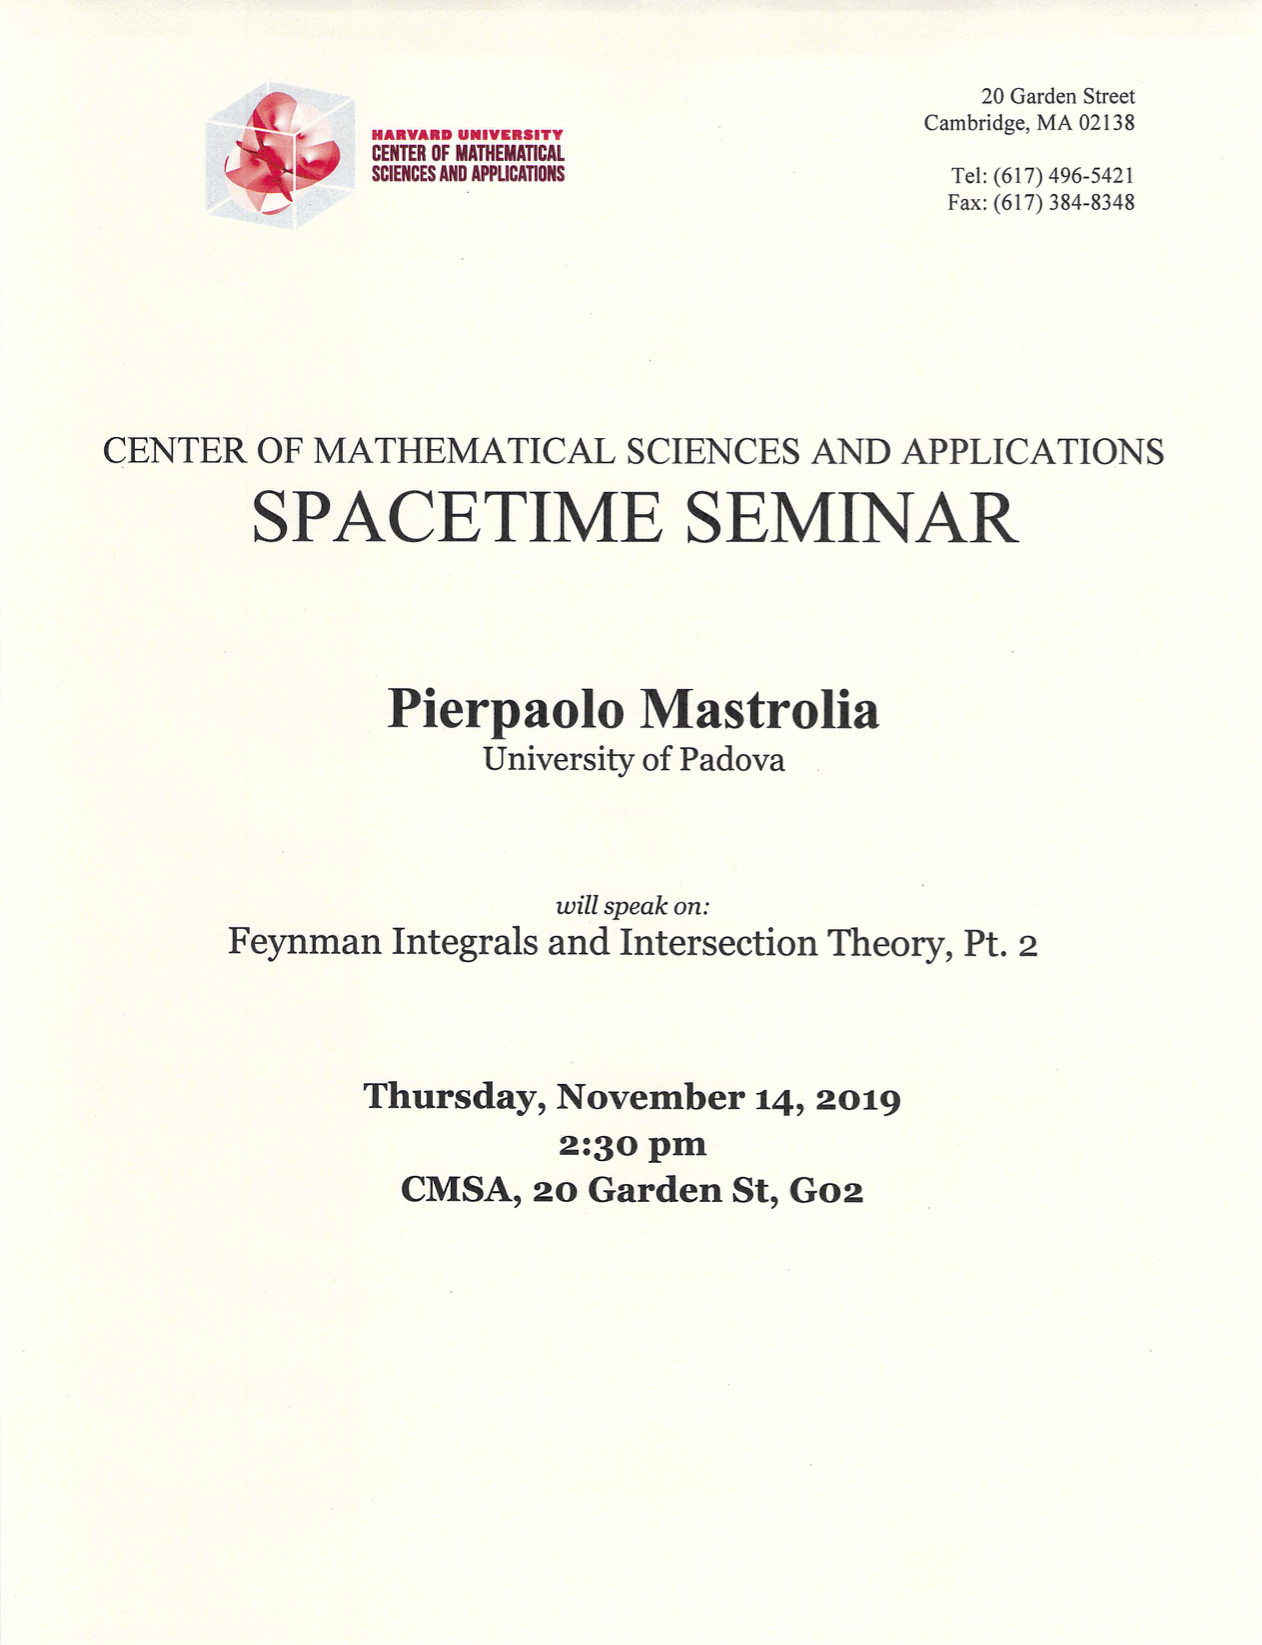 11/14/2019 Spacetime Seminar